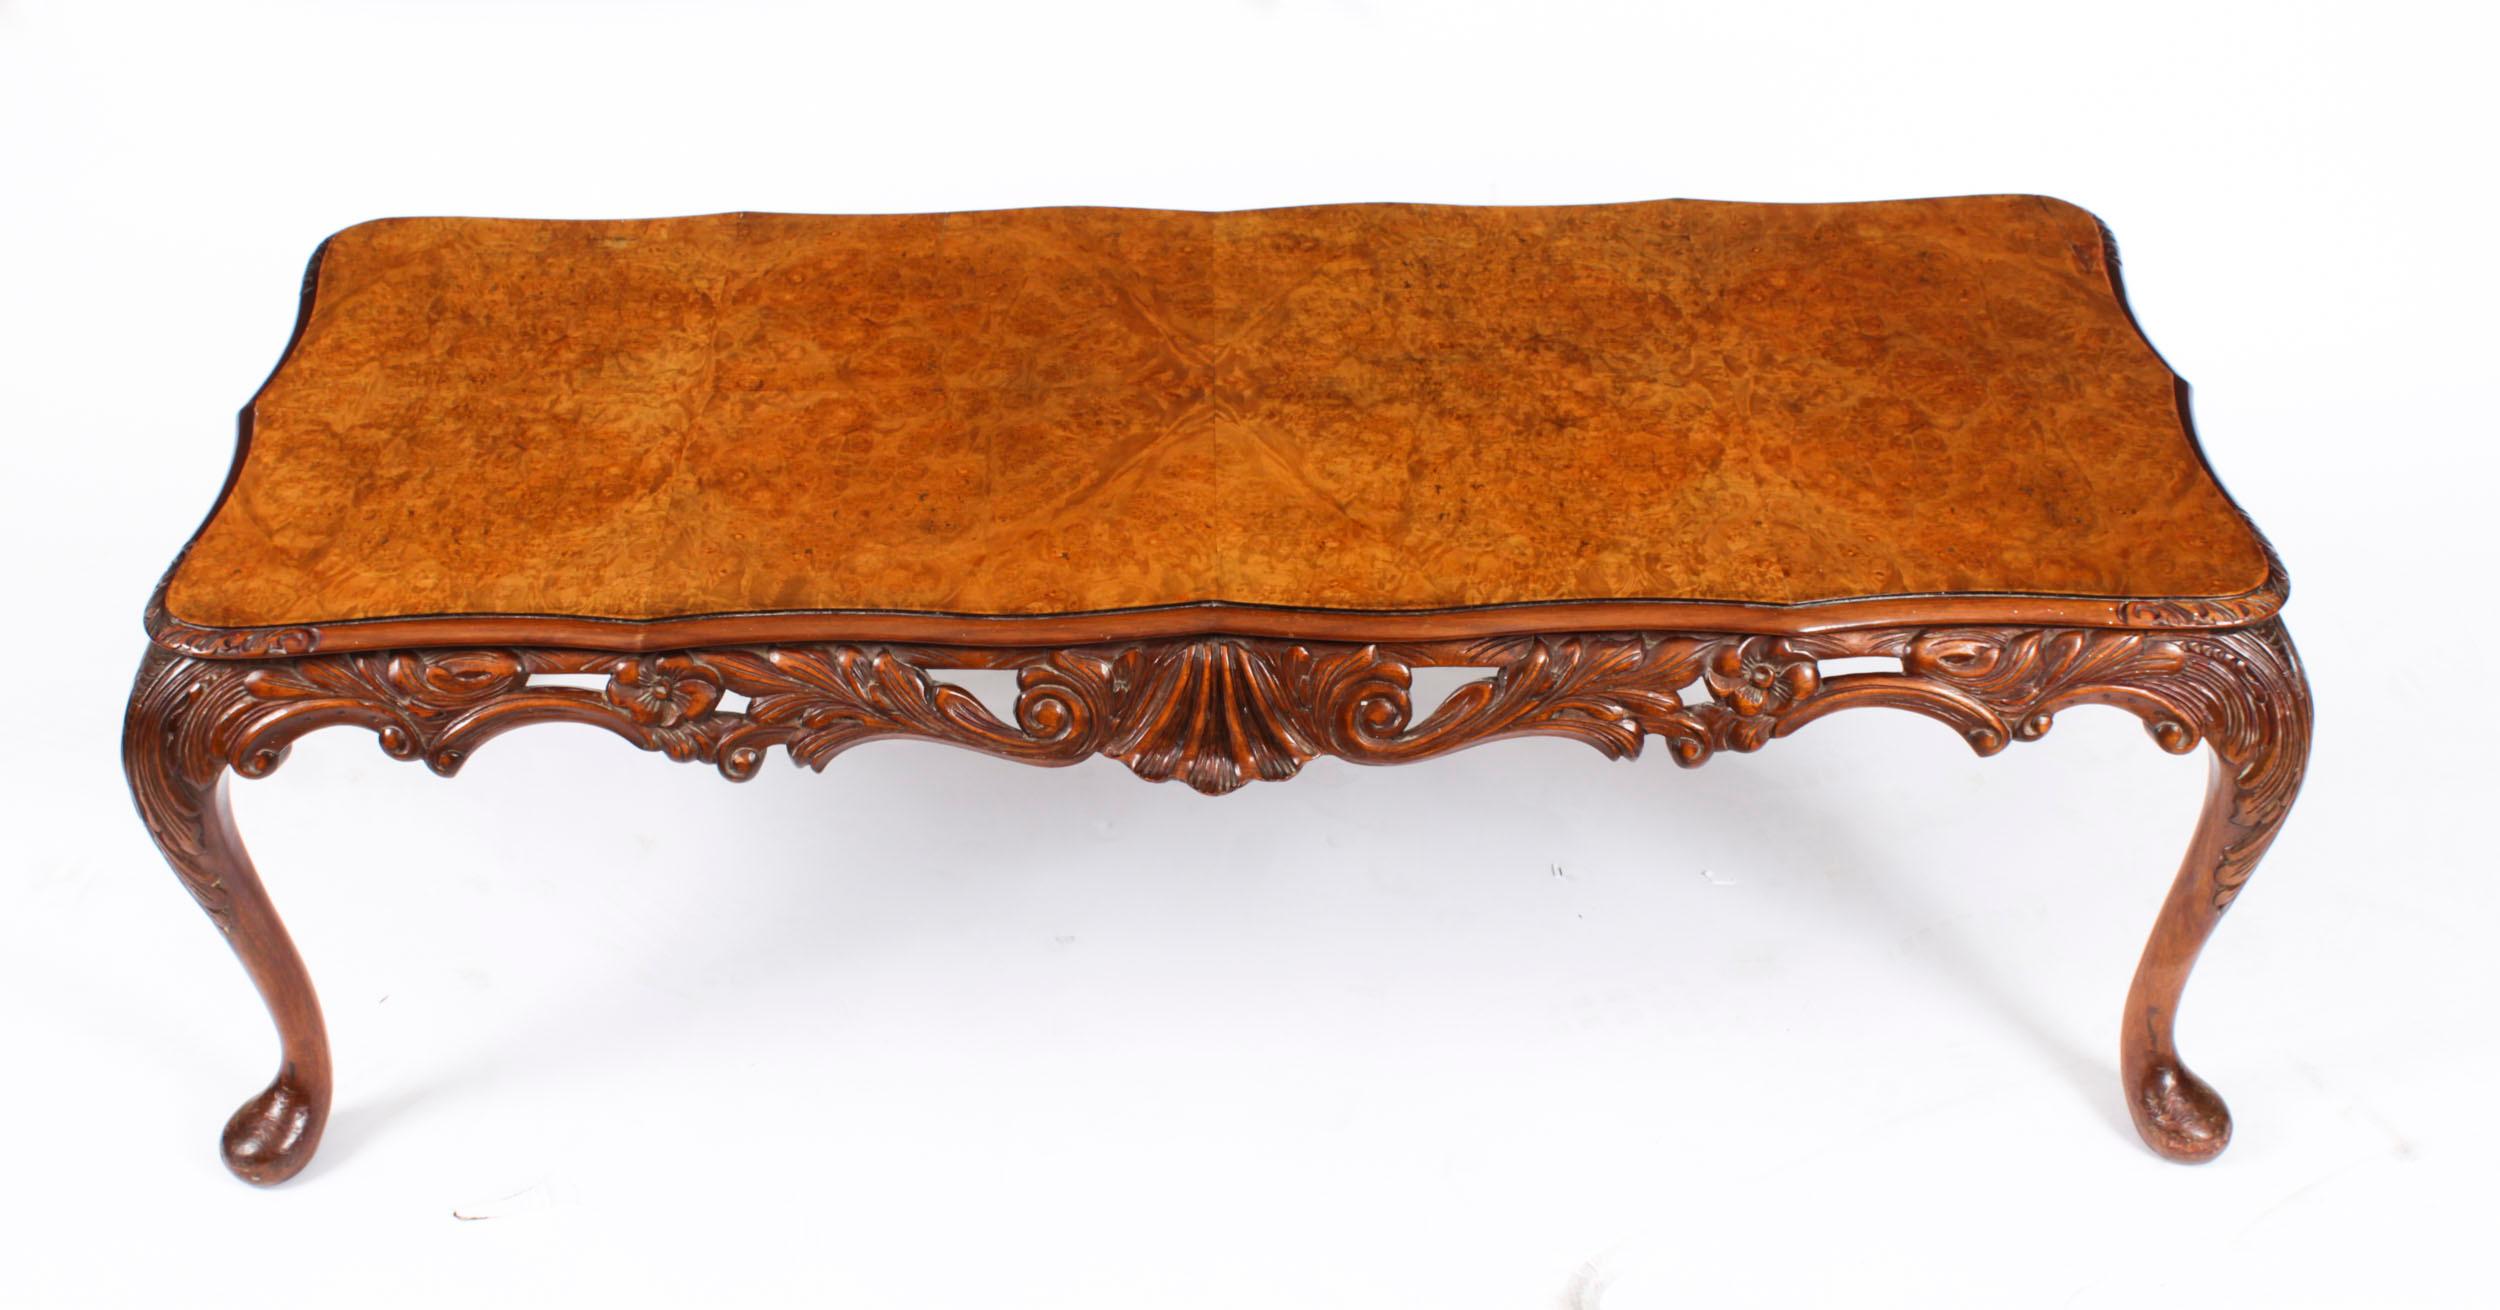 Il s'agit d'une superbe antiquité anglaise   Table basse en ronce de noyer,  avec un beau plateau façonné, datant d'environ 1920.  

Il présente un plateau en forme avec un fabuleux bord sculpté à la main.

La frise sculptée repose sur des pieds